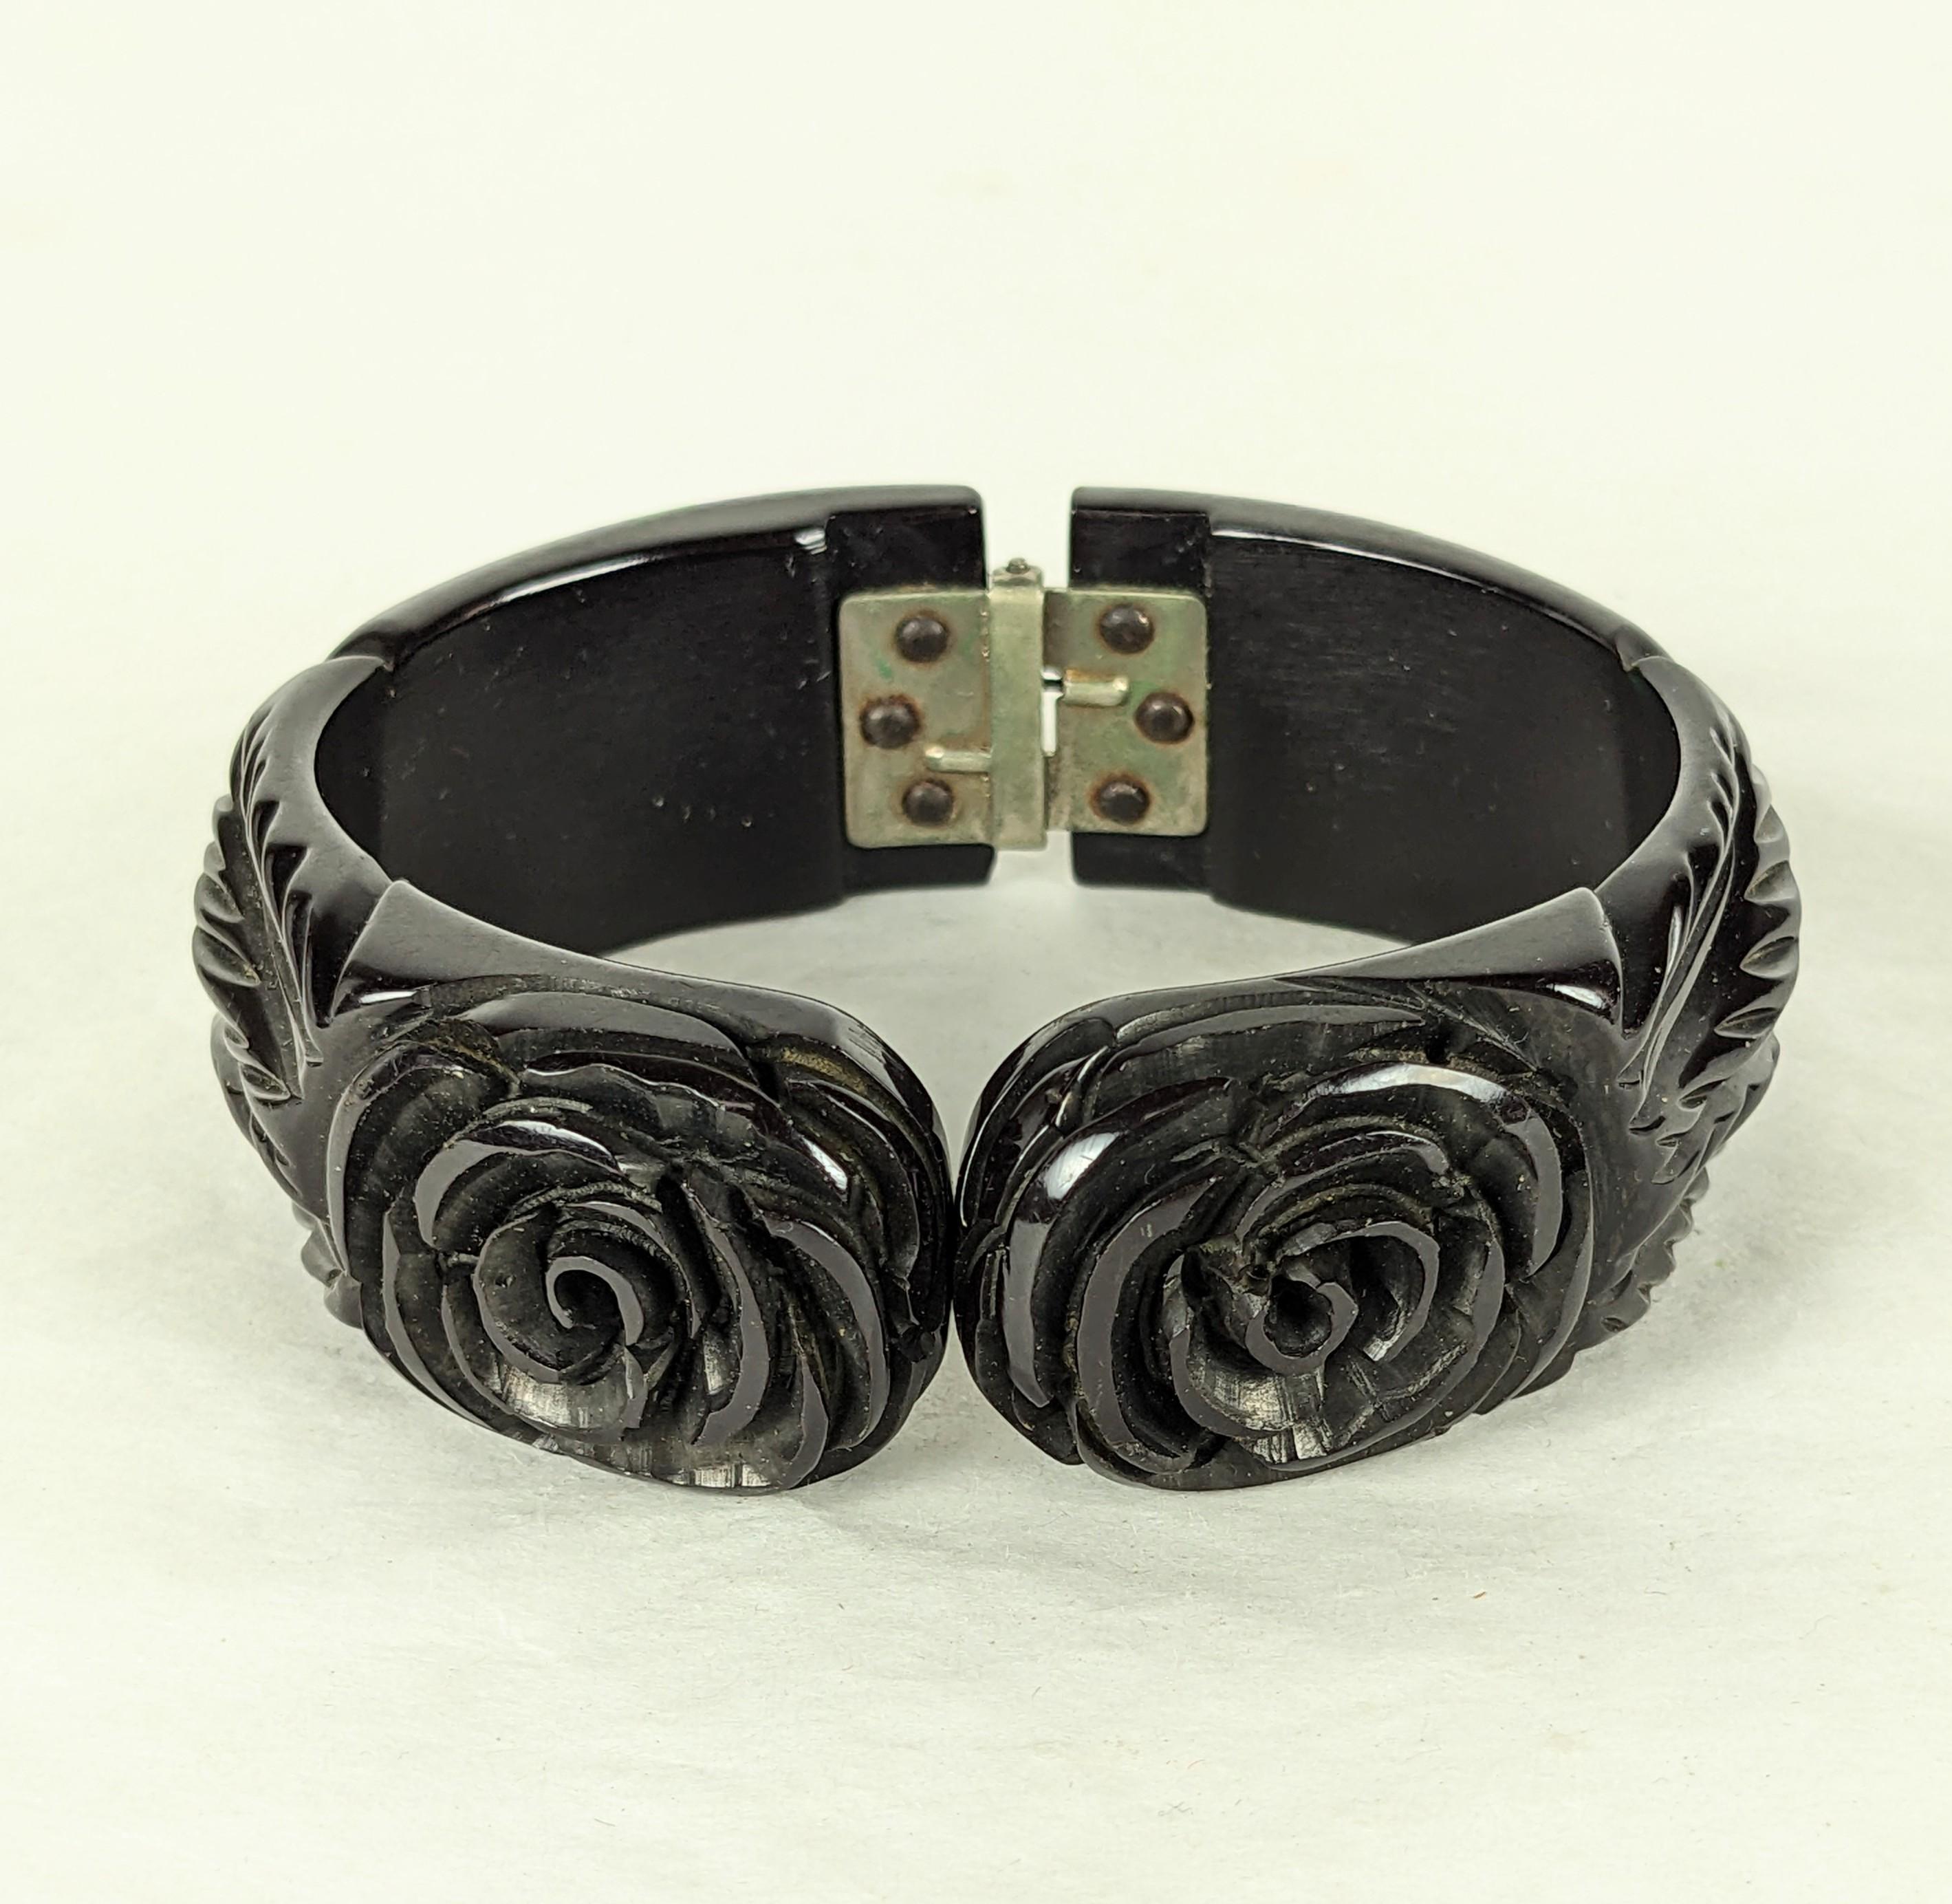 Art Deco Bakelit geschnitzt Rose Clamper Armband aus den 1920er Jahren. Handgeschnitztes schwarzes Bakelit mit 2 Blumenmotiven auf der Oberseite und geschnitzten Blättern an den Schultern. Das Scharnier auf der Rückseite ermöglicht den Zugang. 
1